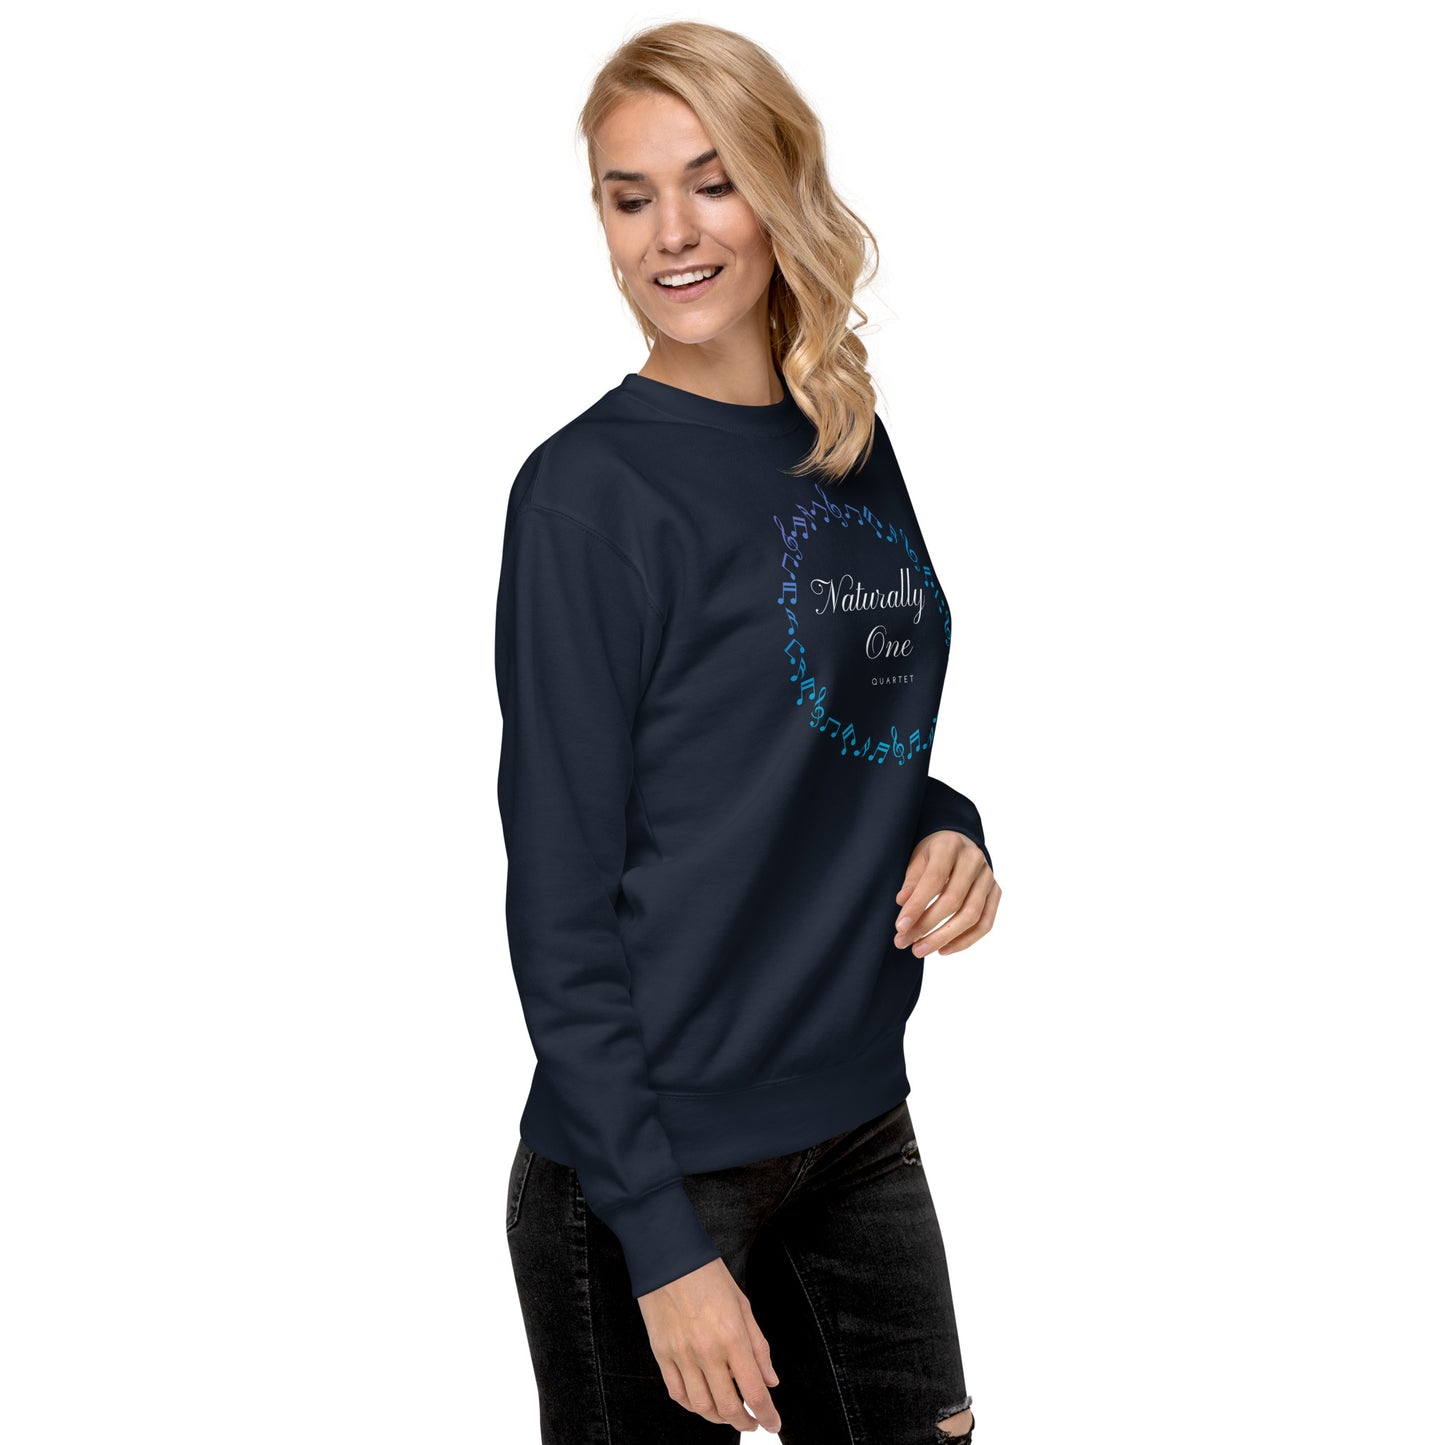 Naturally One - Printed Unisex Premium Sweatshirt